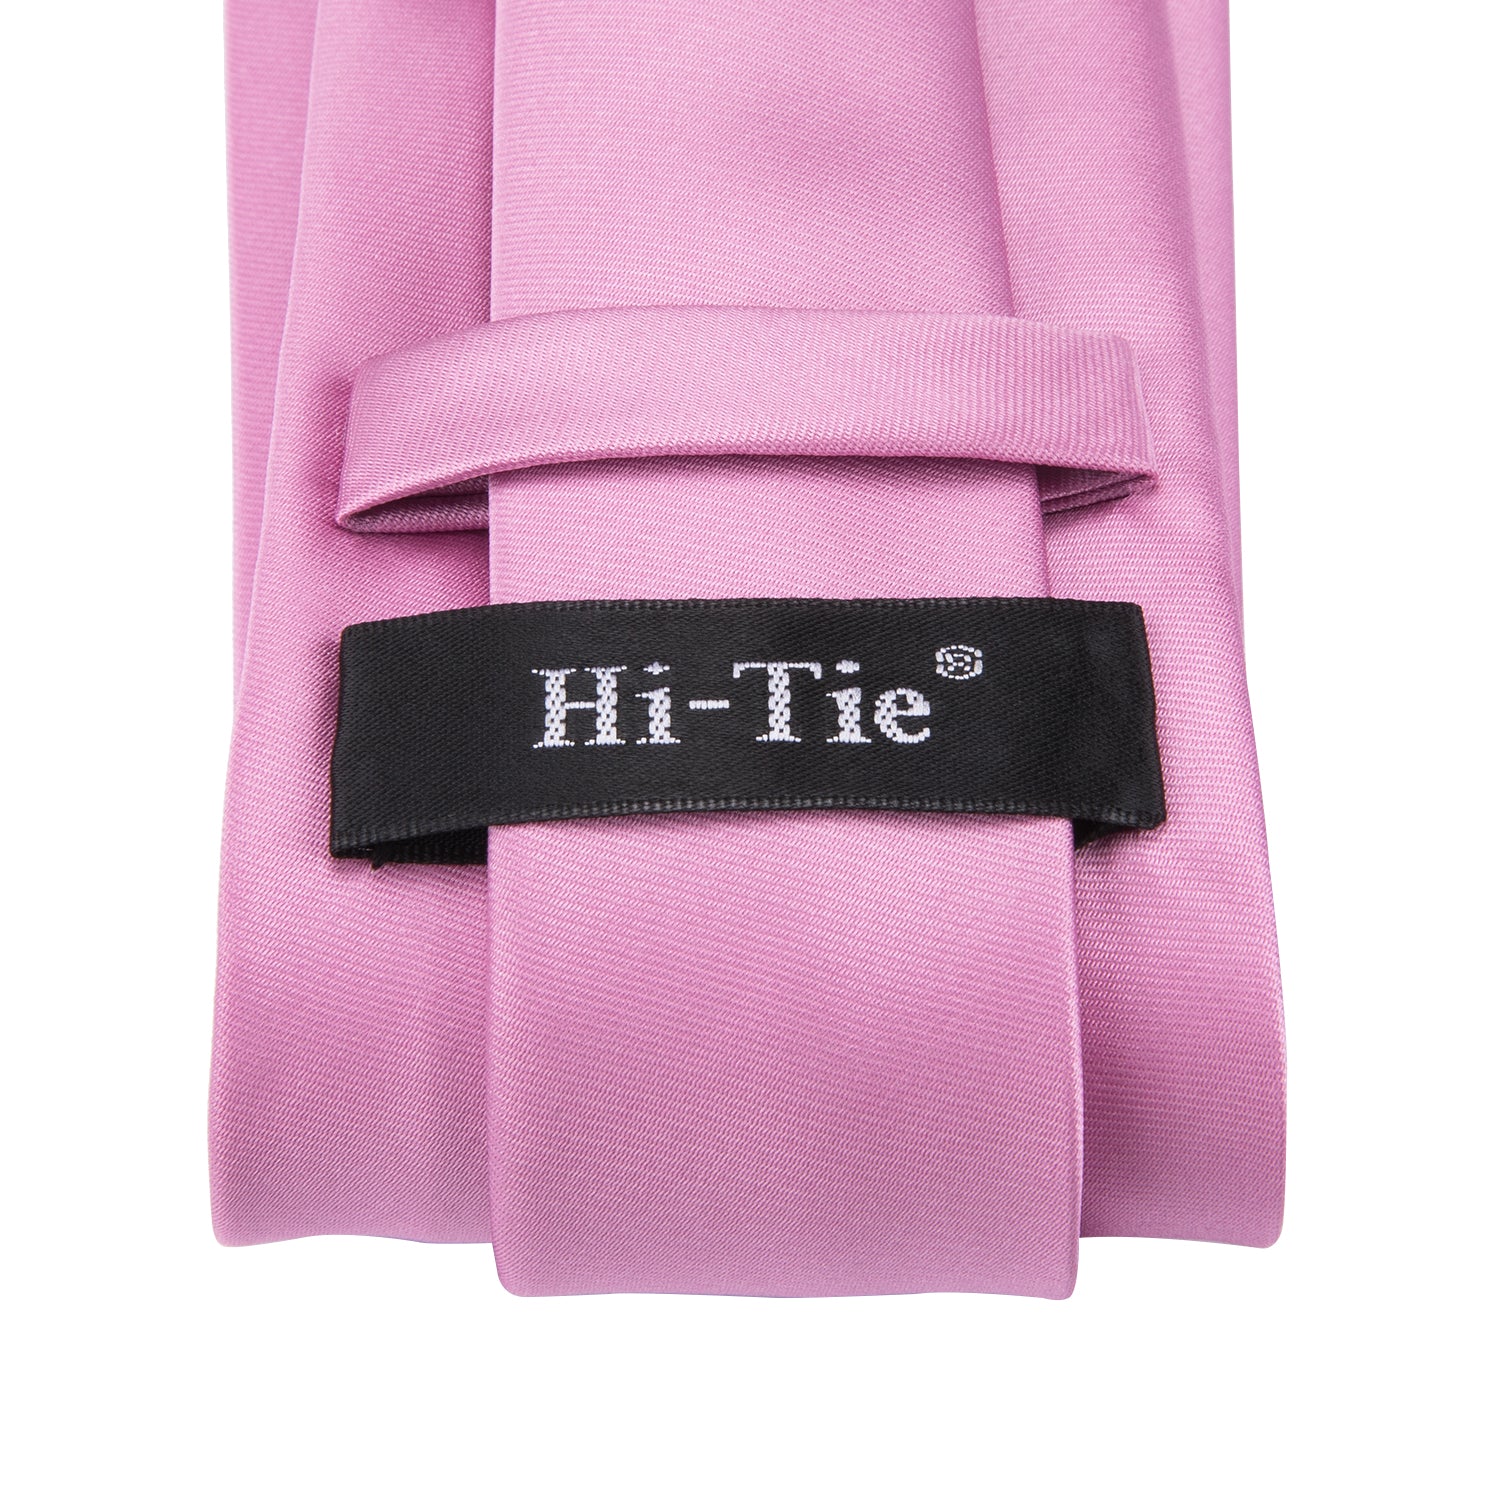 Wedding Solid Pink Necktie Pocket Square Cufflinks Set